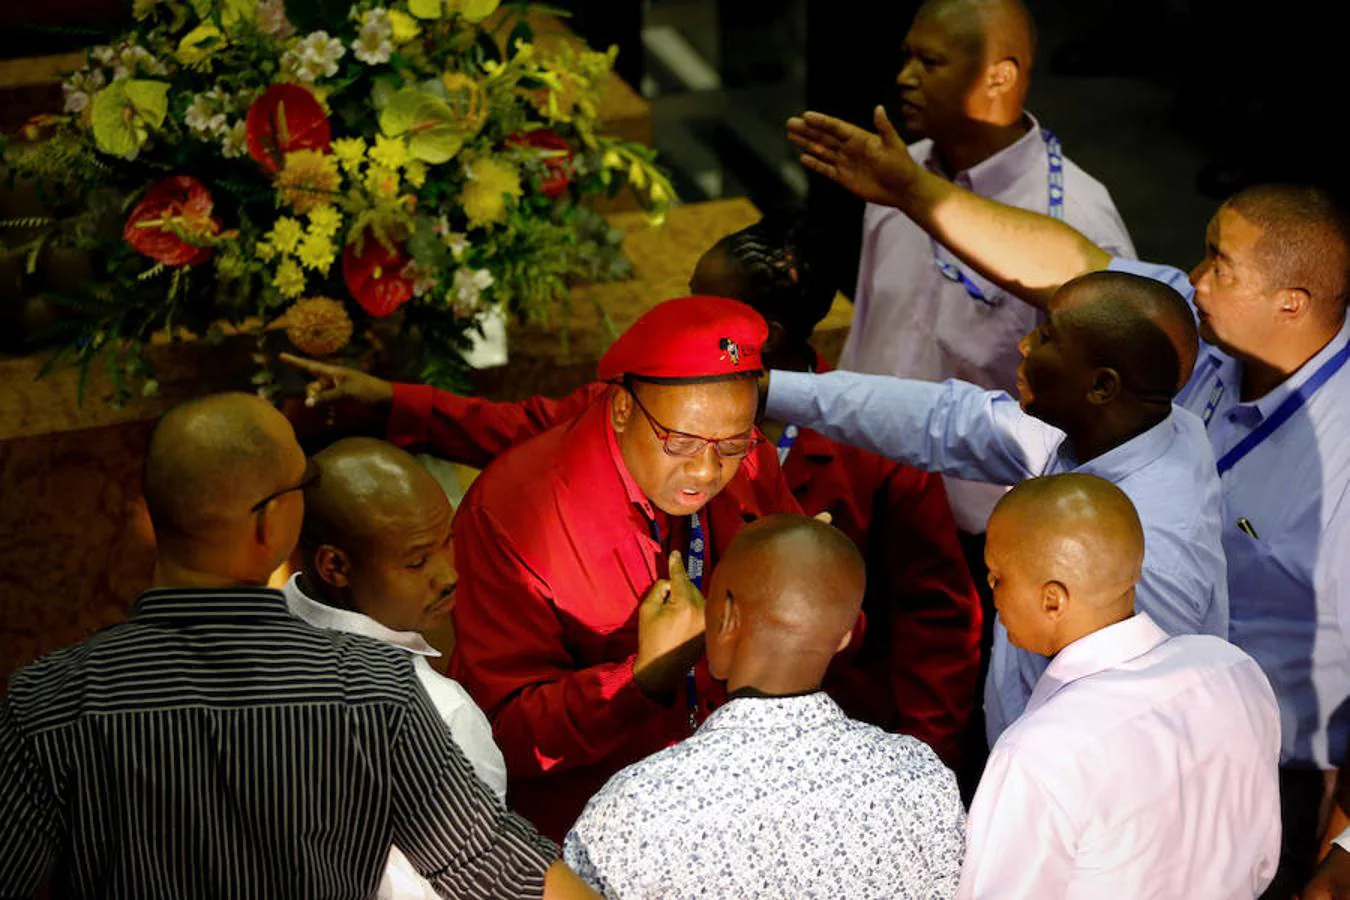 Imágenes de la trifulca entre diputados en el Parlamento de Sudáfrica durante el debate sobre el estado de la nación